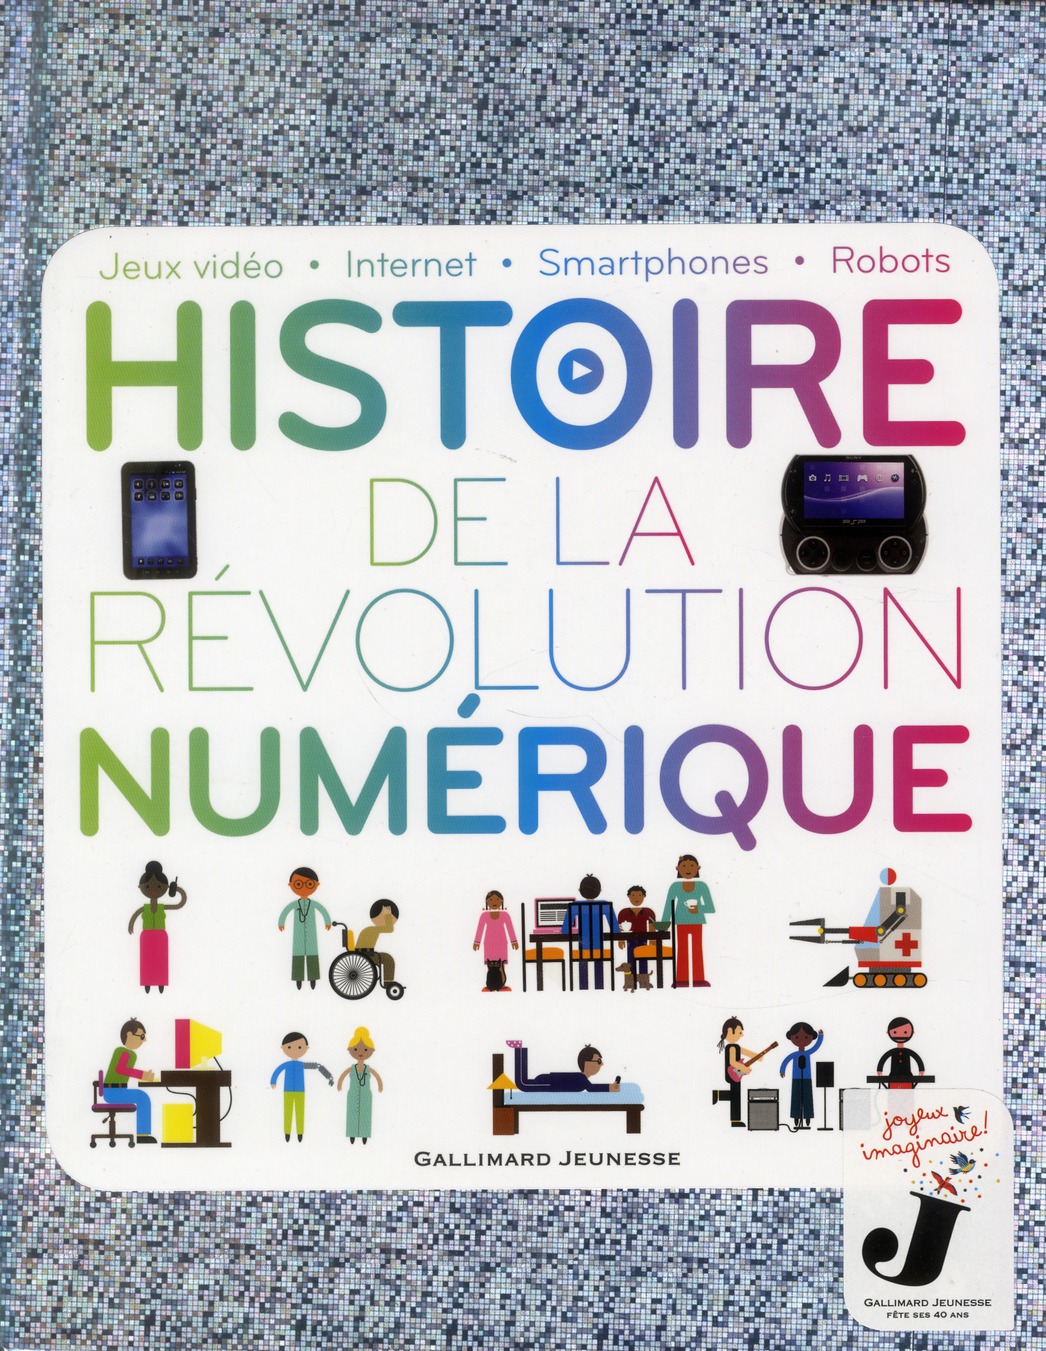 Histoire de la revolution numerique - jeux video - internet - smartphones - robots